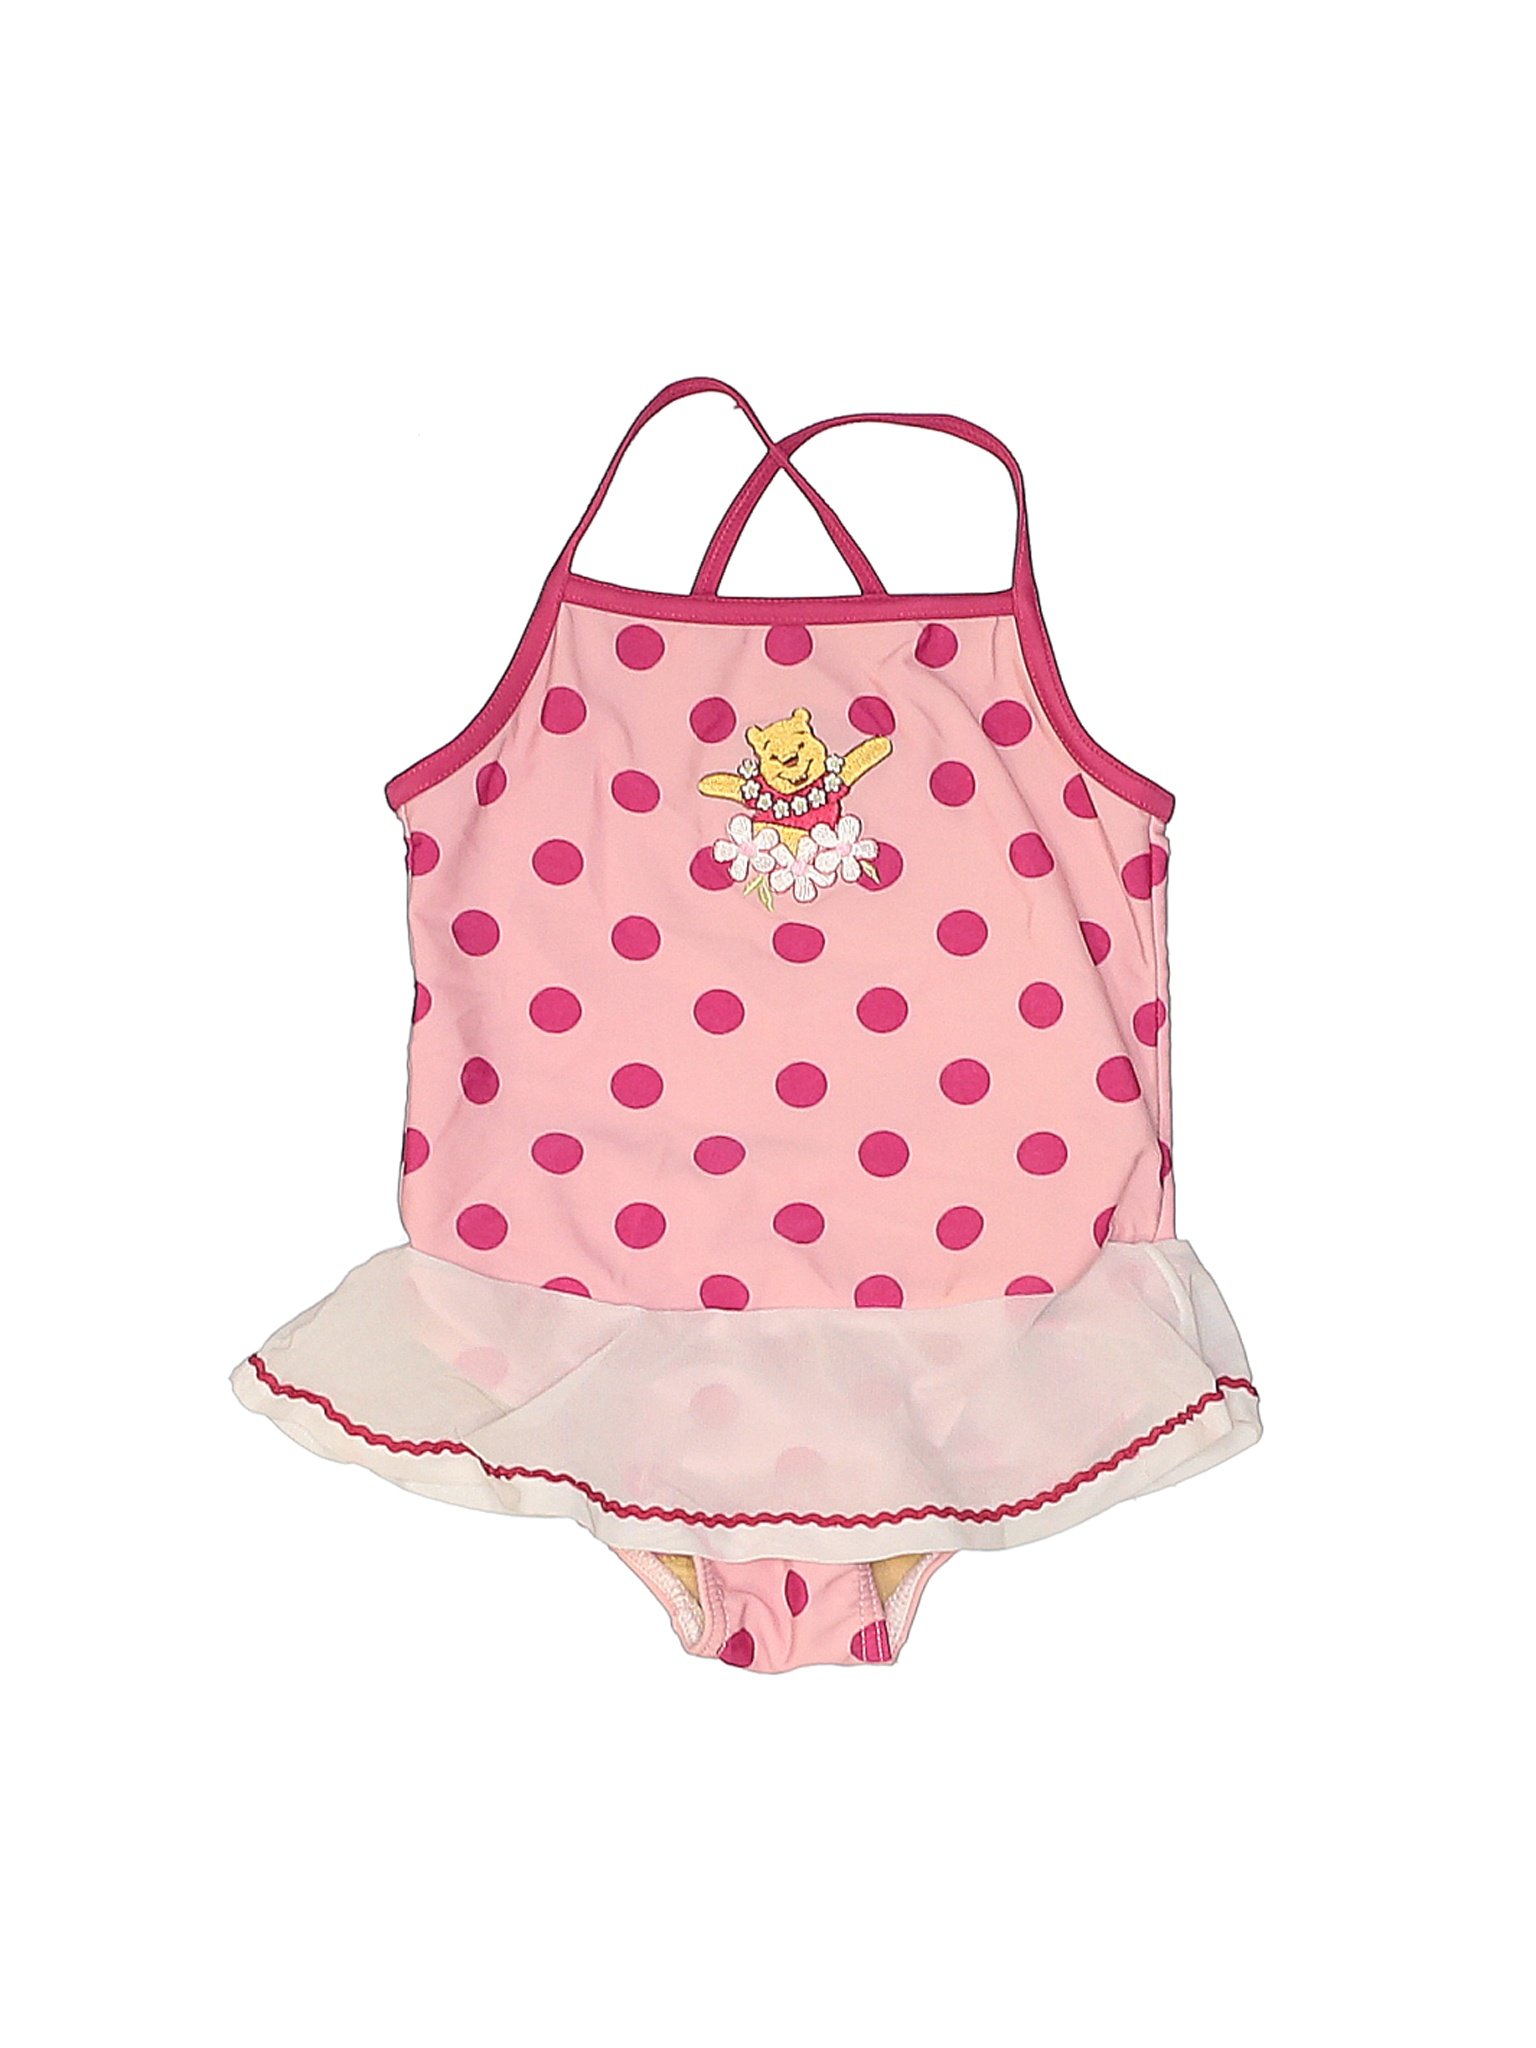 Disney Girls Pink One Piece Swimsuit 24 Months | eBay